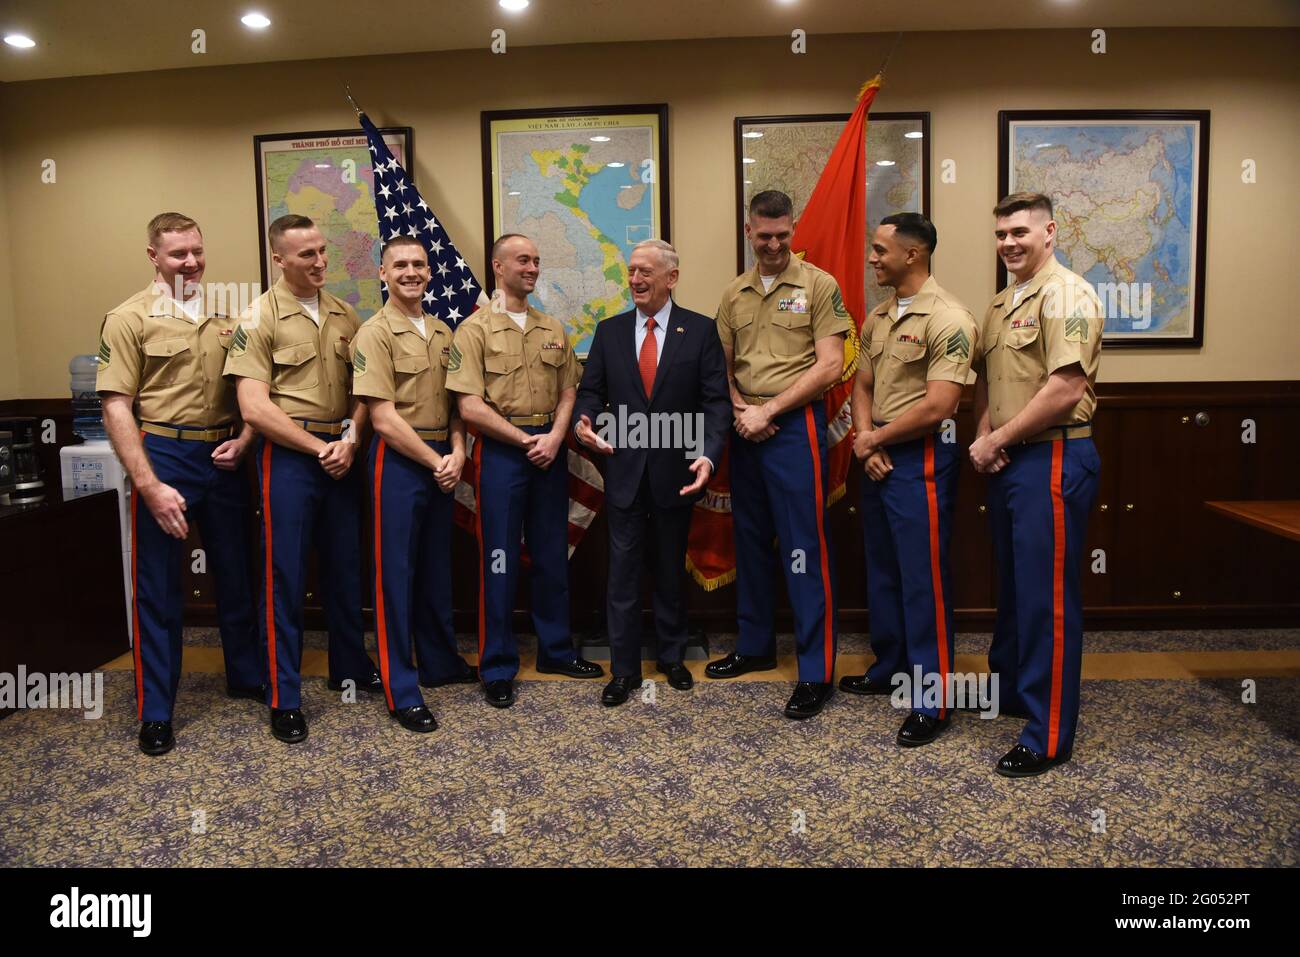 Reportage: Il Segretario della Difesa degli Stati Uniti James N. Mattis incontra i Marines degli Stati Uniti al Consolato degli Stati Uniti a ho Chi Minh City, Vietnam, 16 ottobre 2018. Foto Stock